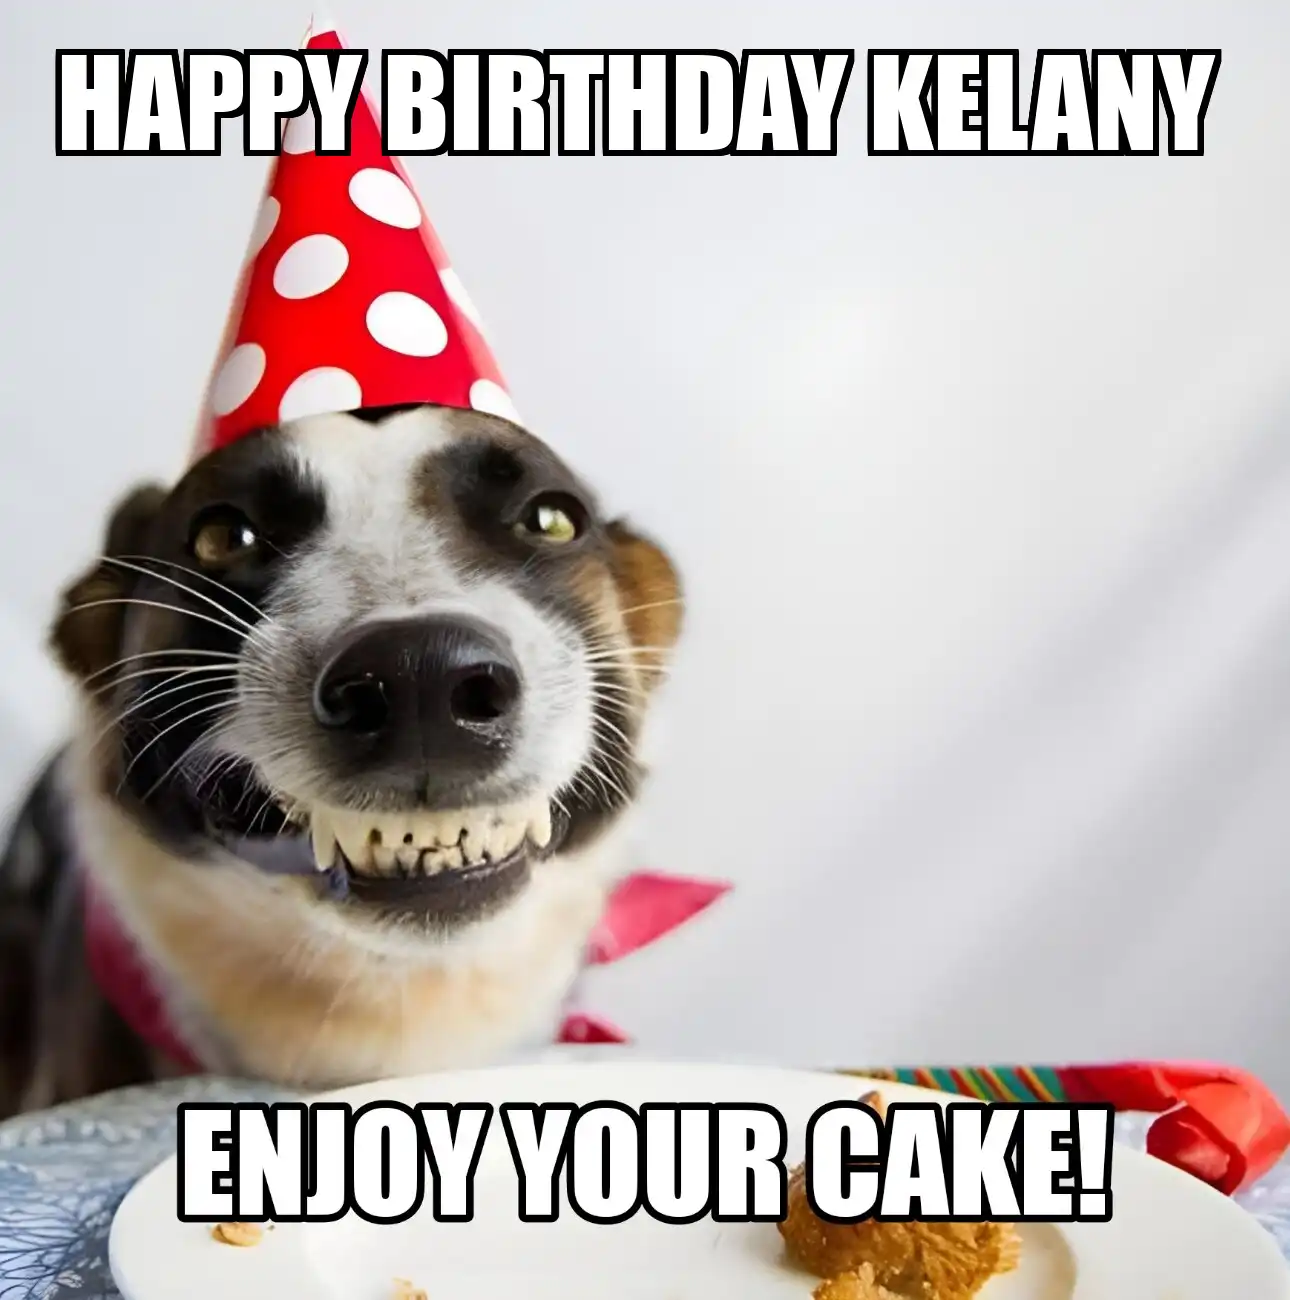 Happy Birthday Kelany Enjoy Your Cake Dog Meme